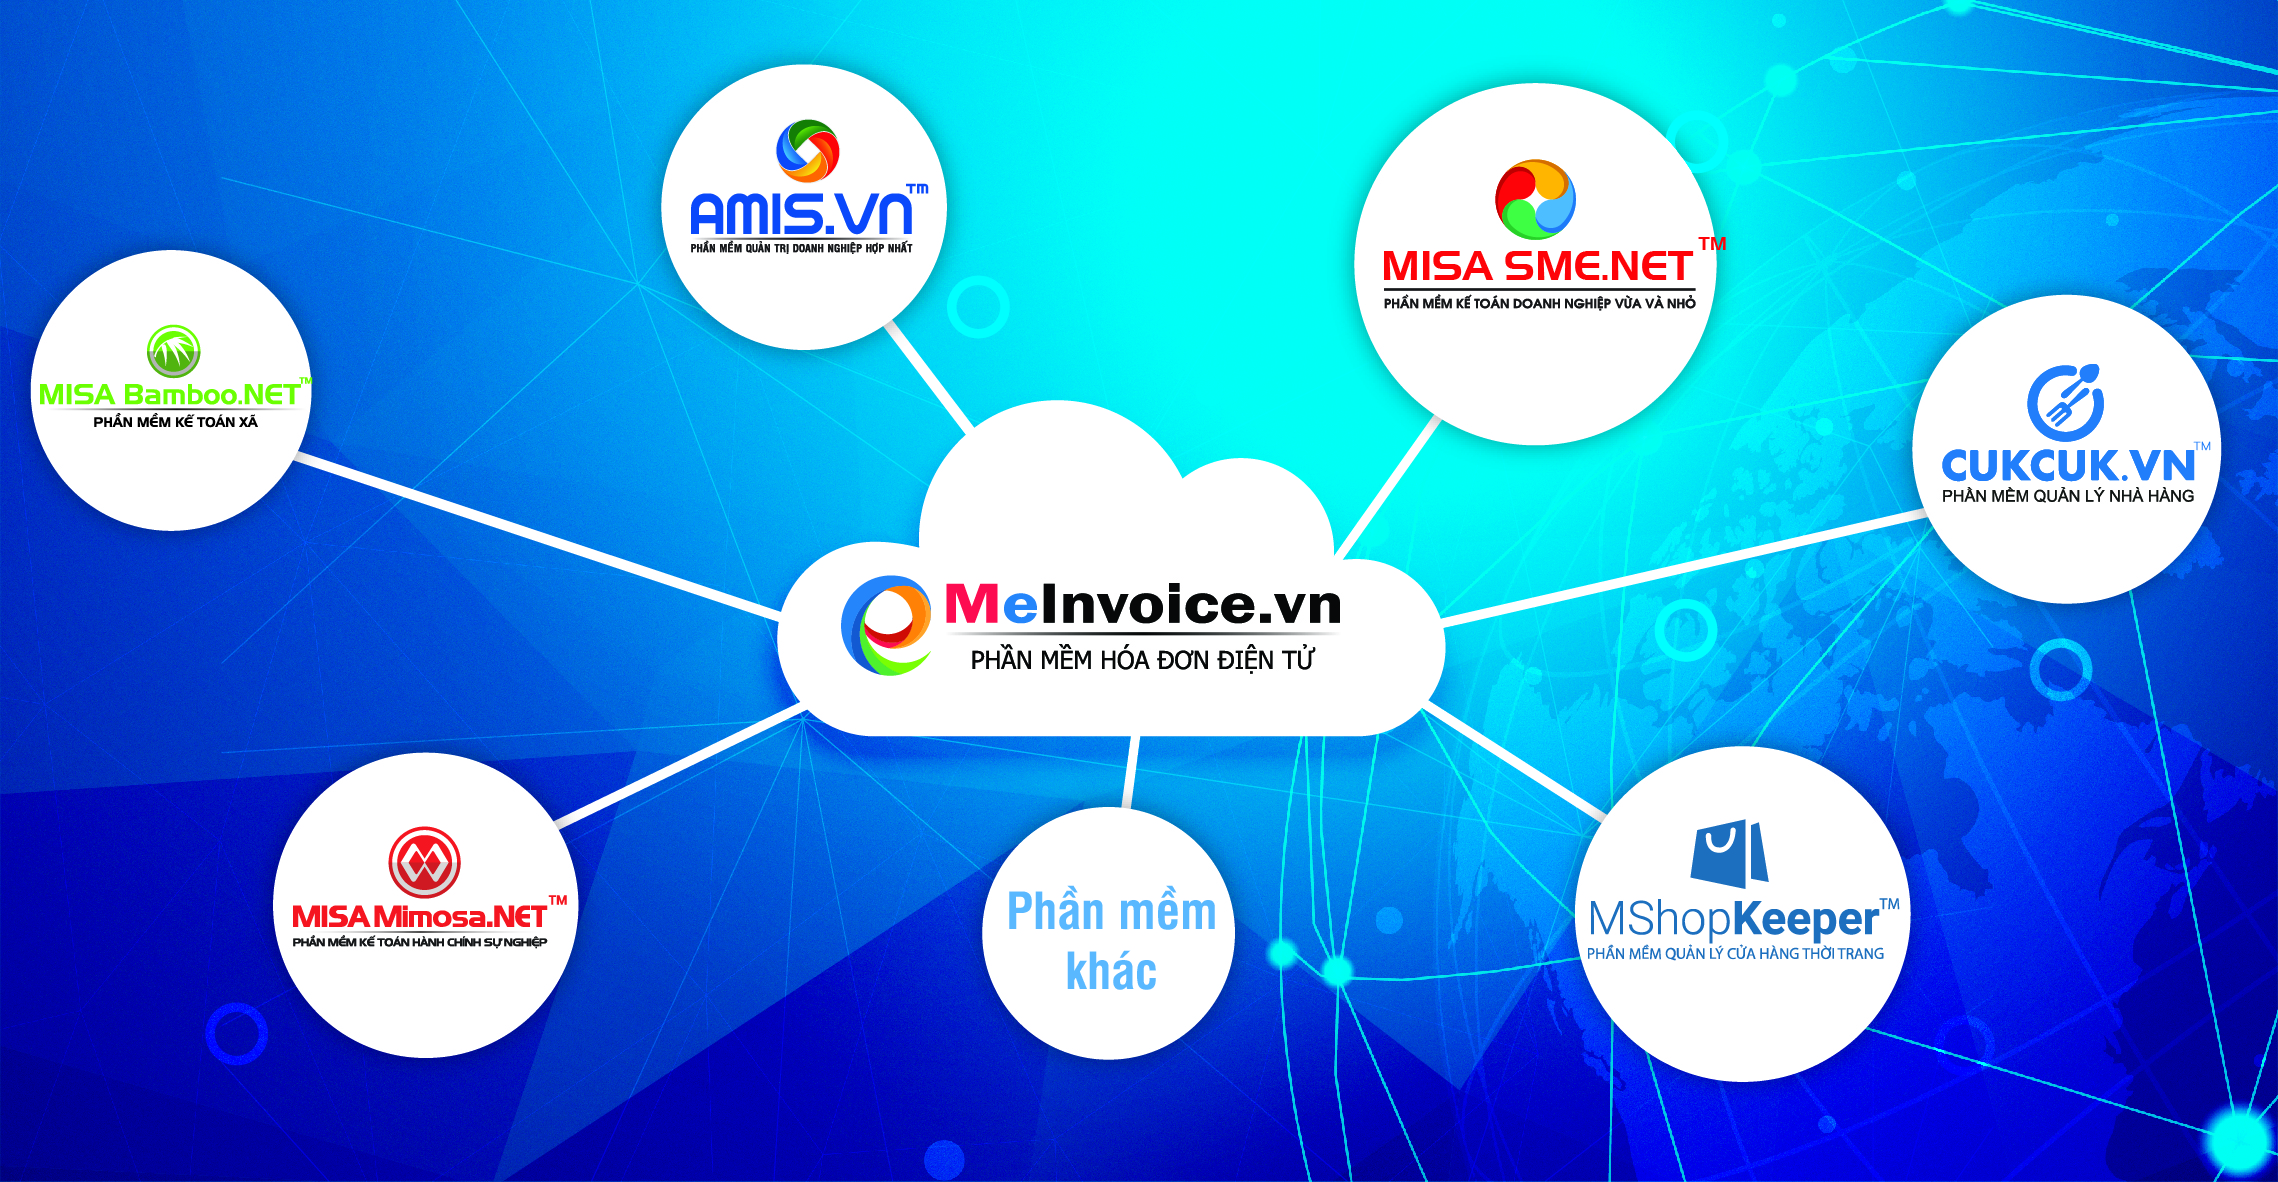 Phần mềm Hóa đơn điện tử MISA meInvoice được tích hợp ngay trên hệ sinh thái các sản phẩm của MISA